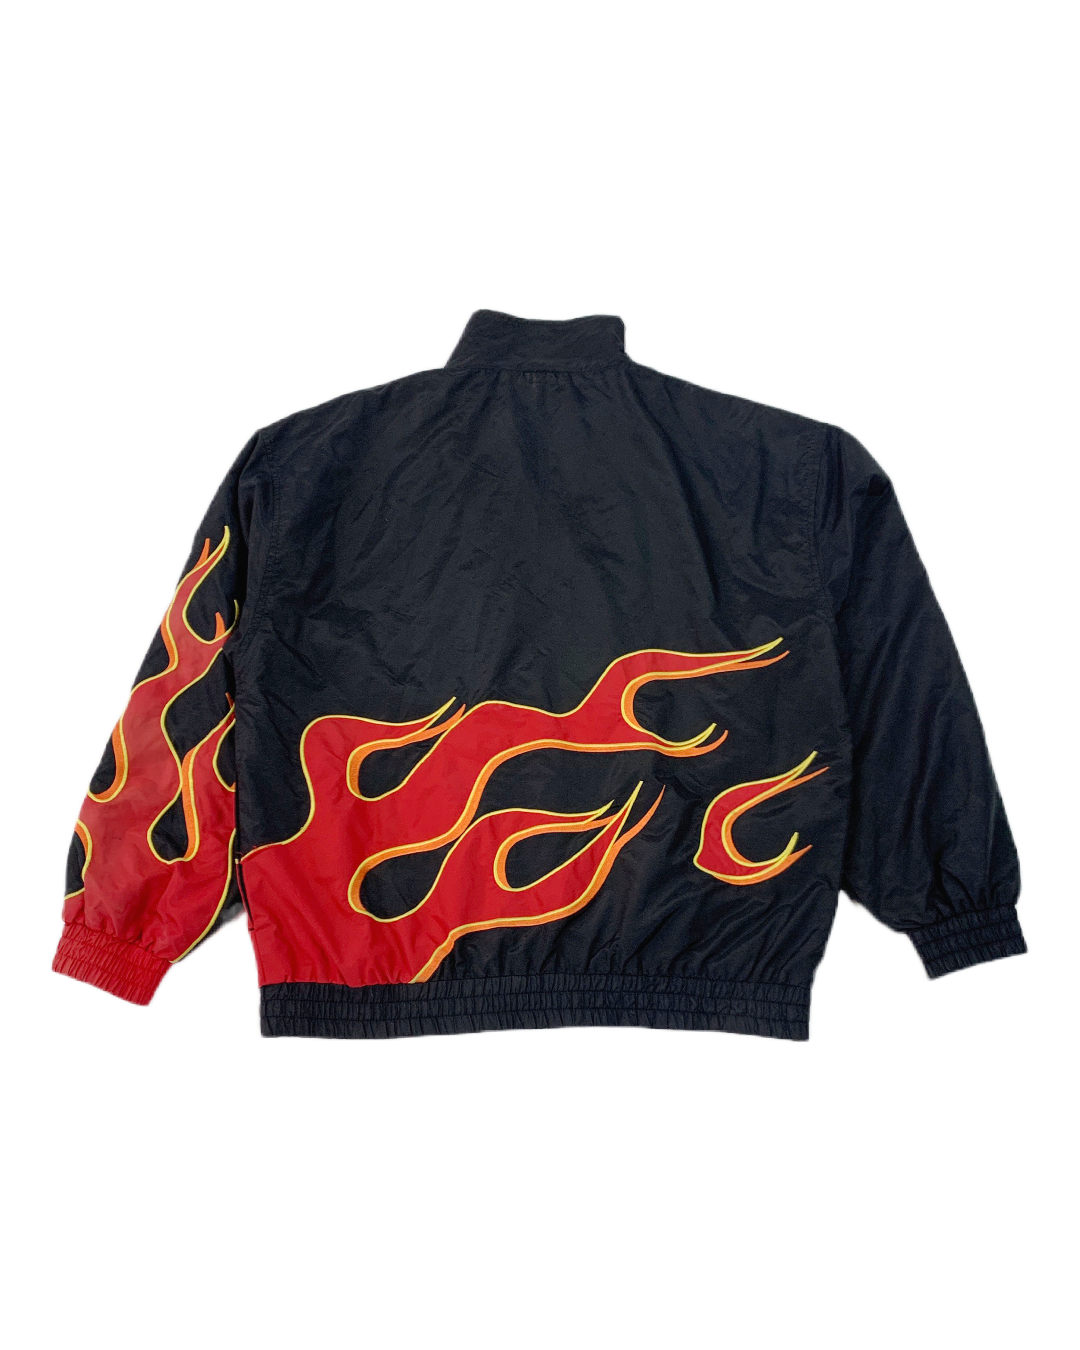 Mac Tools Flames Vintage Jacket - L